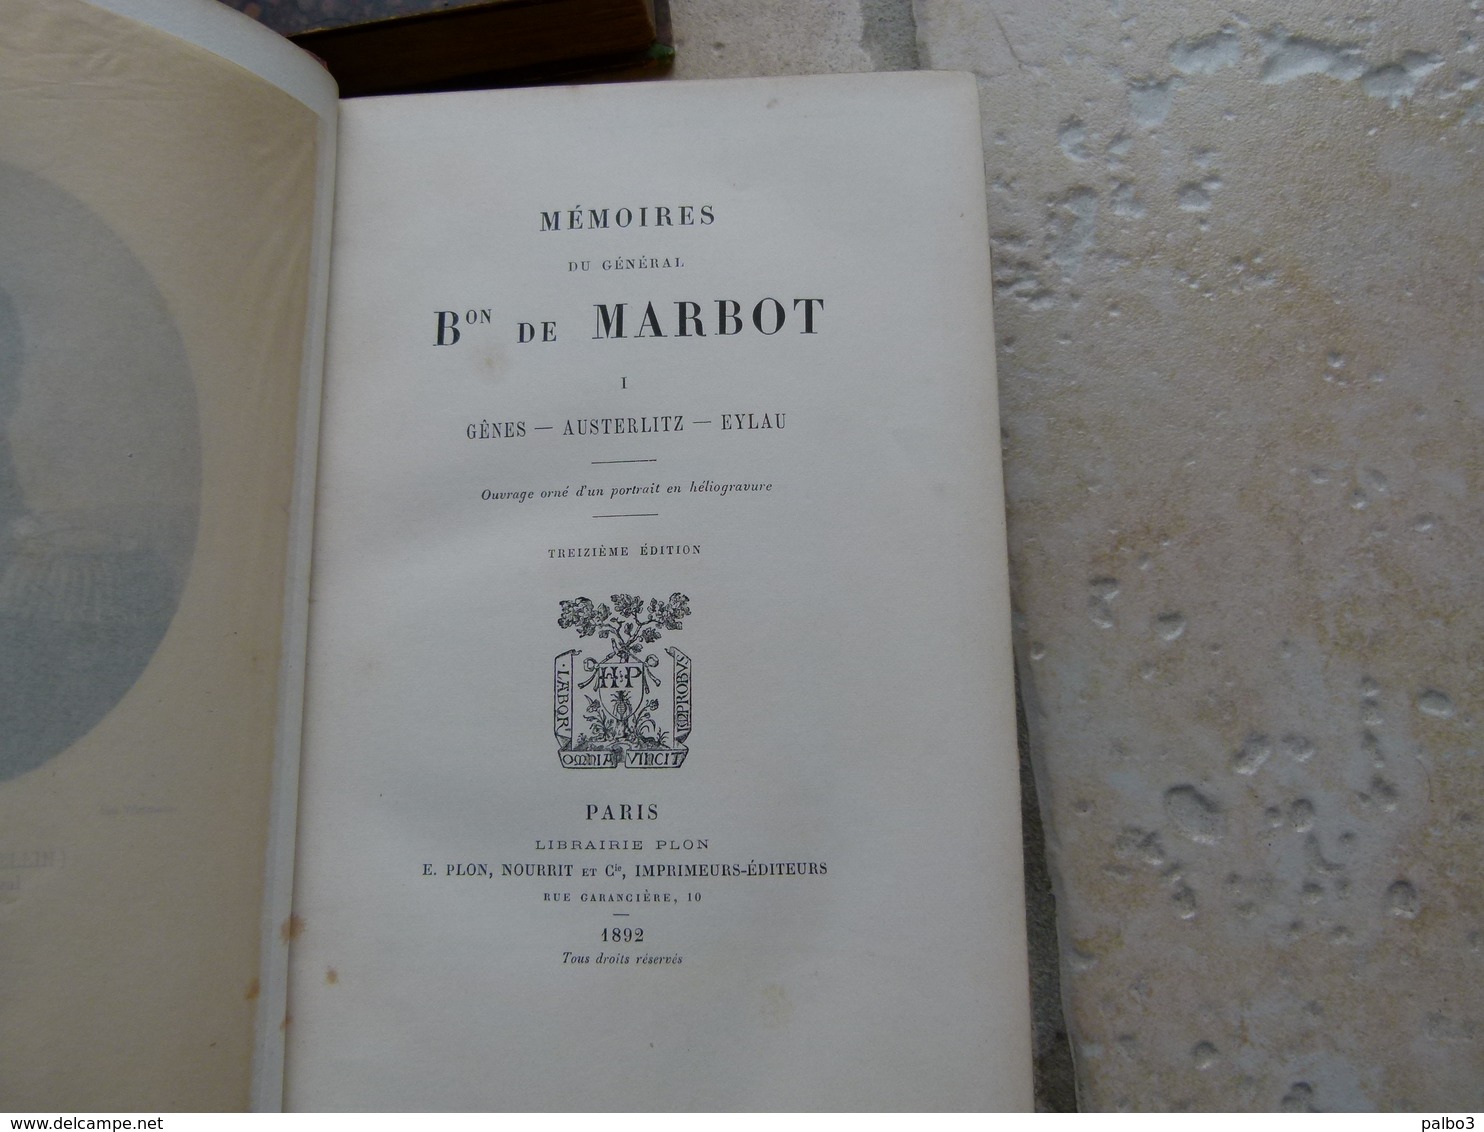 1 er EMPIRE Lot de 3 Livres reliés Memoires du Général Baron de Marbot